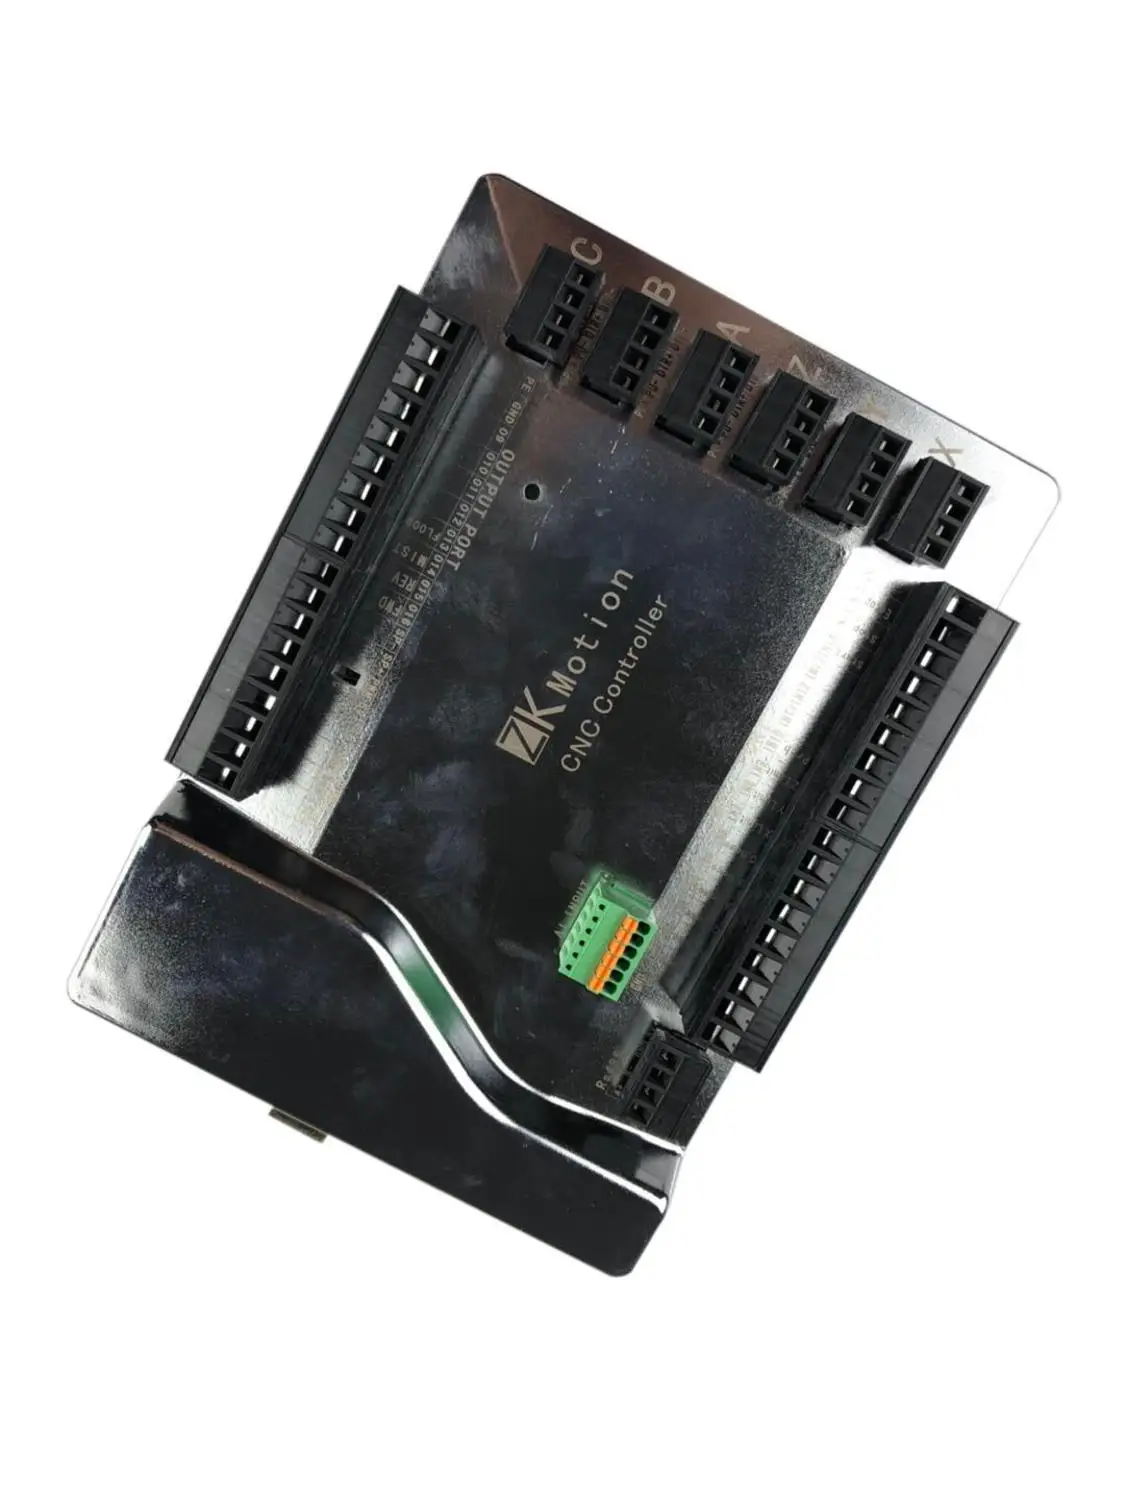 Mach3 USB Гравировальный Станок с ЧПУ интерфейсная плата управления движением 3 оси 4 оси 6 осей